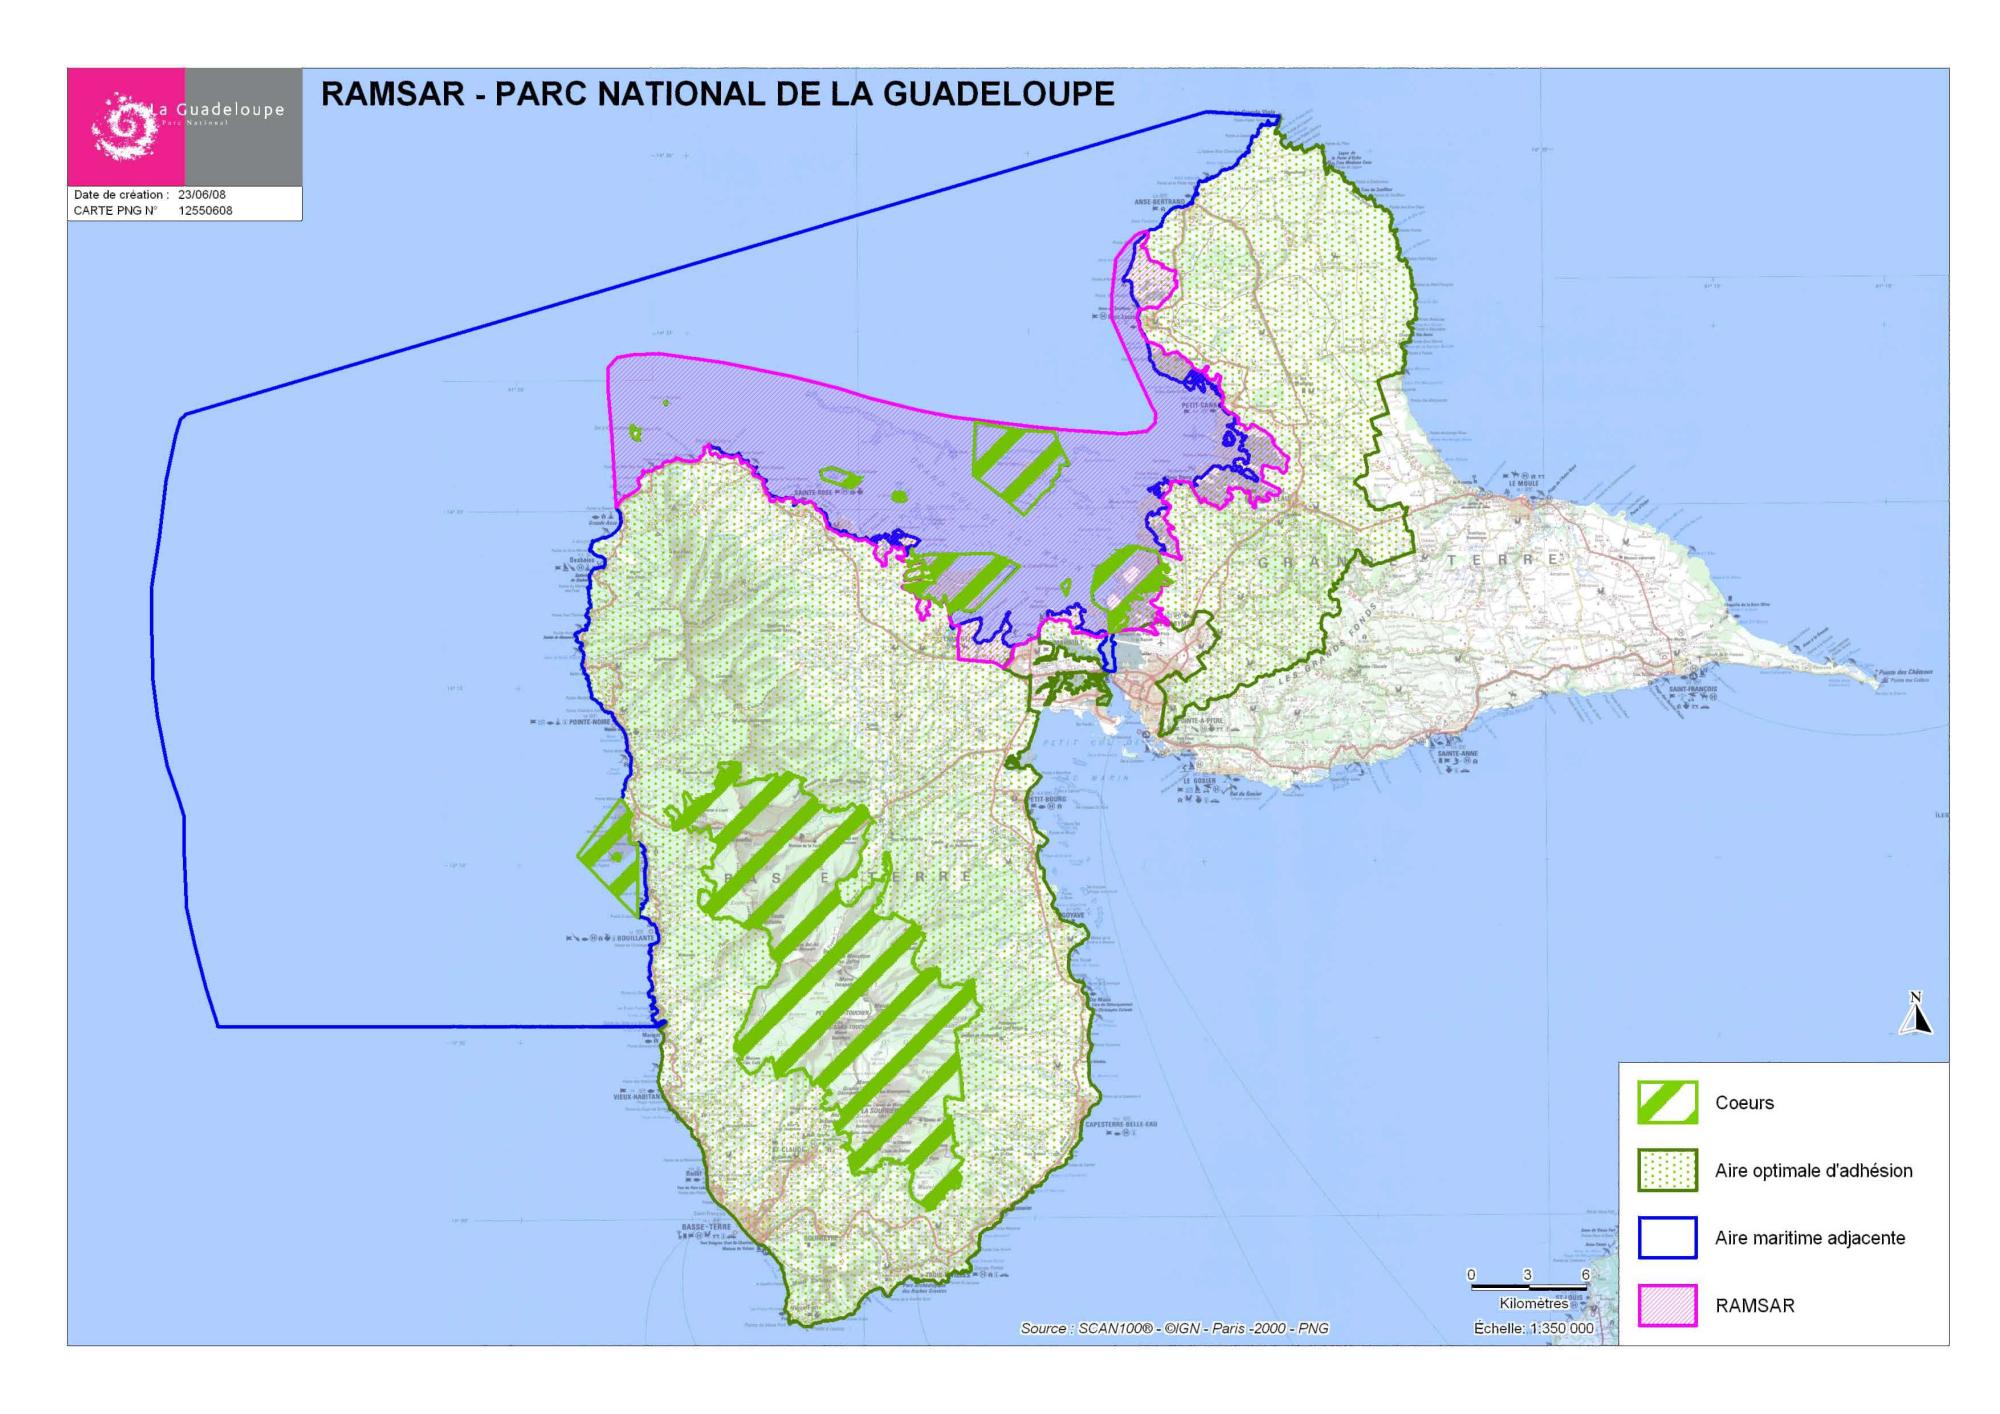 Carte site Ramsar au Parc national de la Guadeloupe.jpg